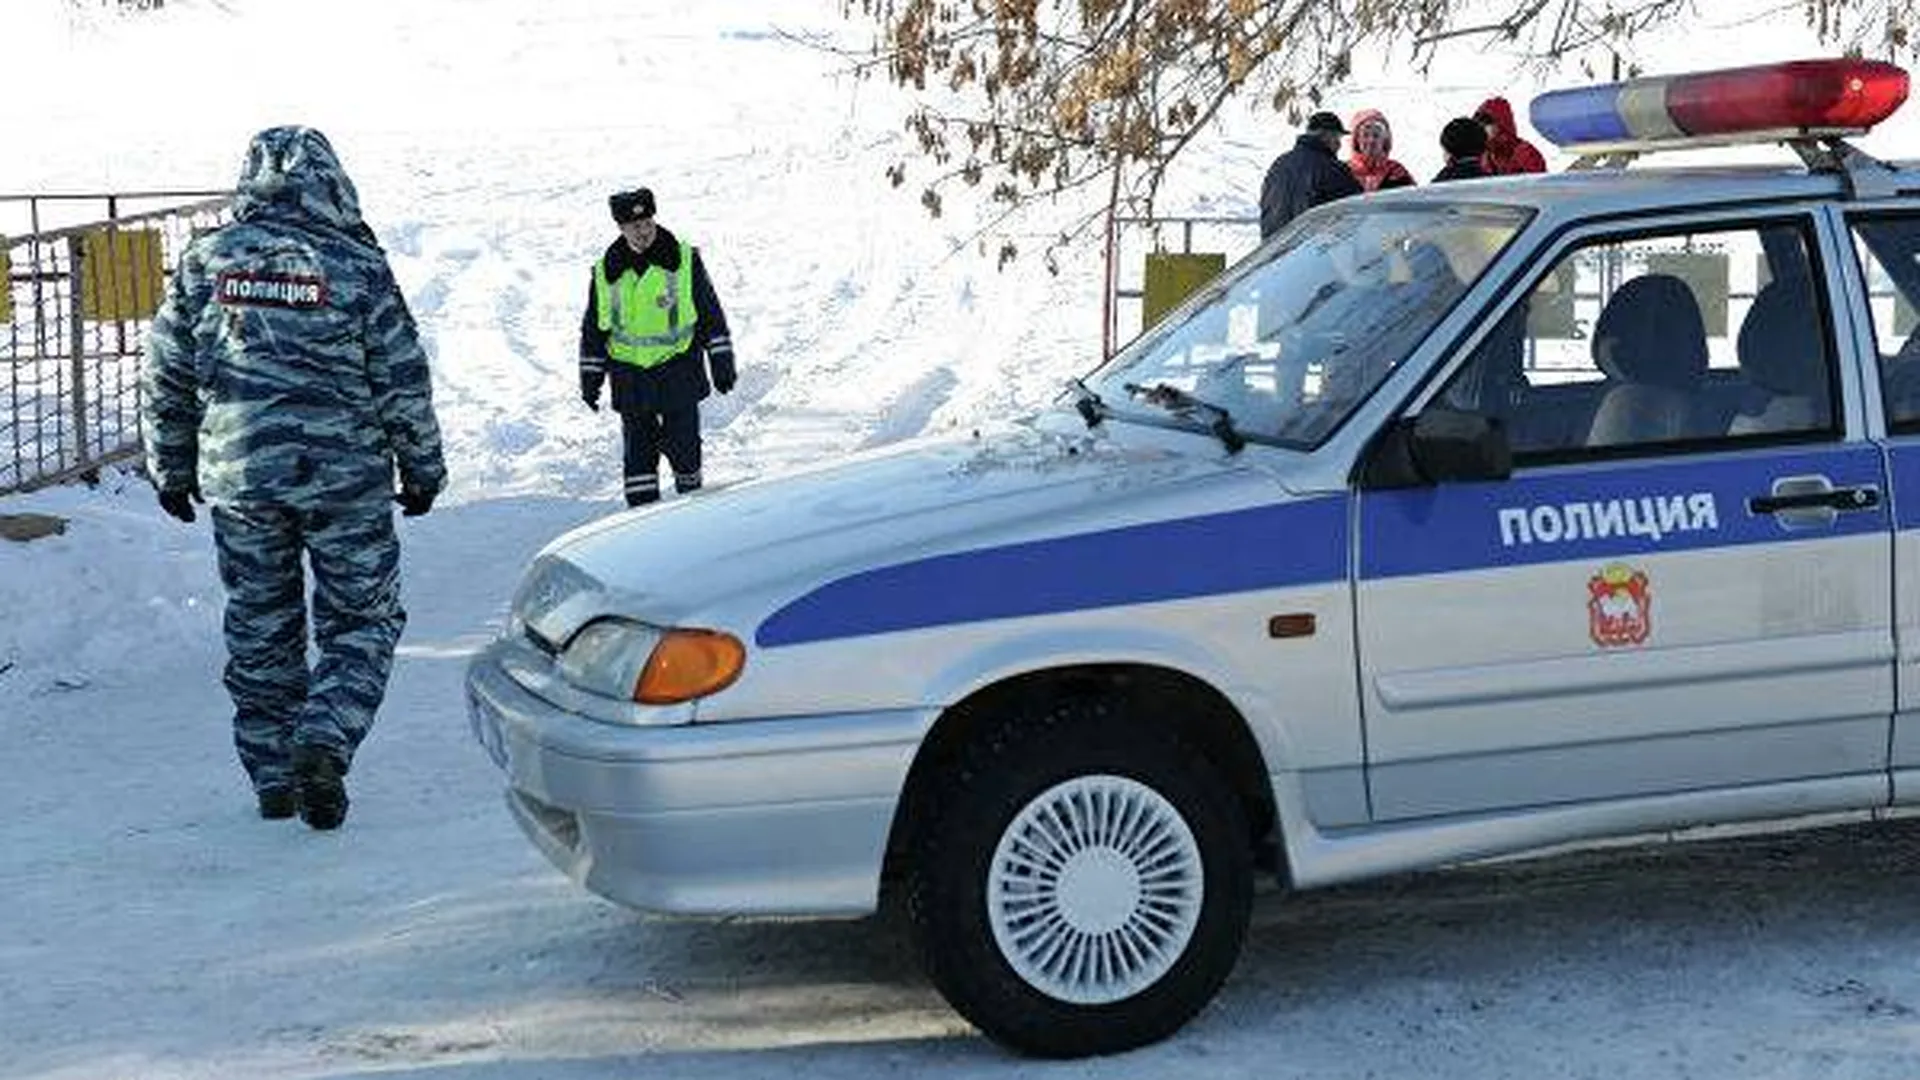 Тело пропавшей под Новгородом девочки нашла соседка во время уборки снега — СМИ